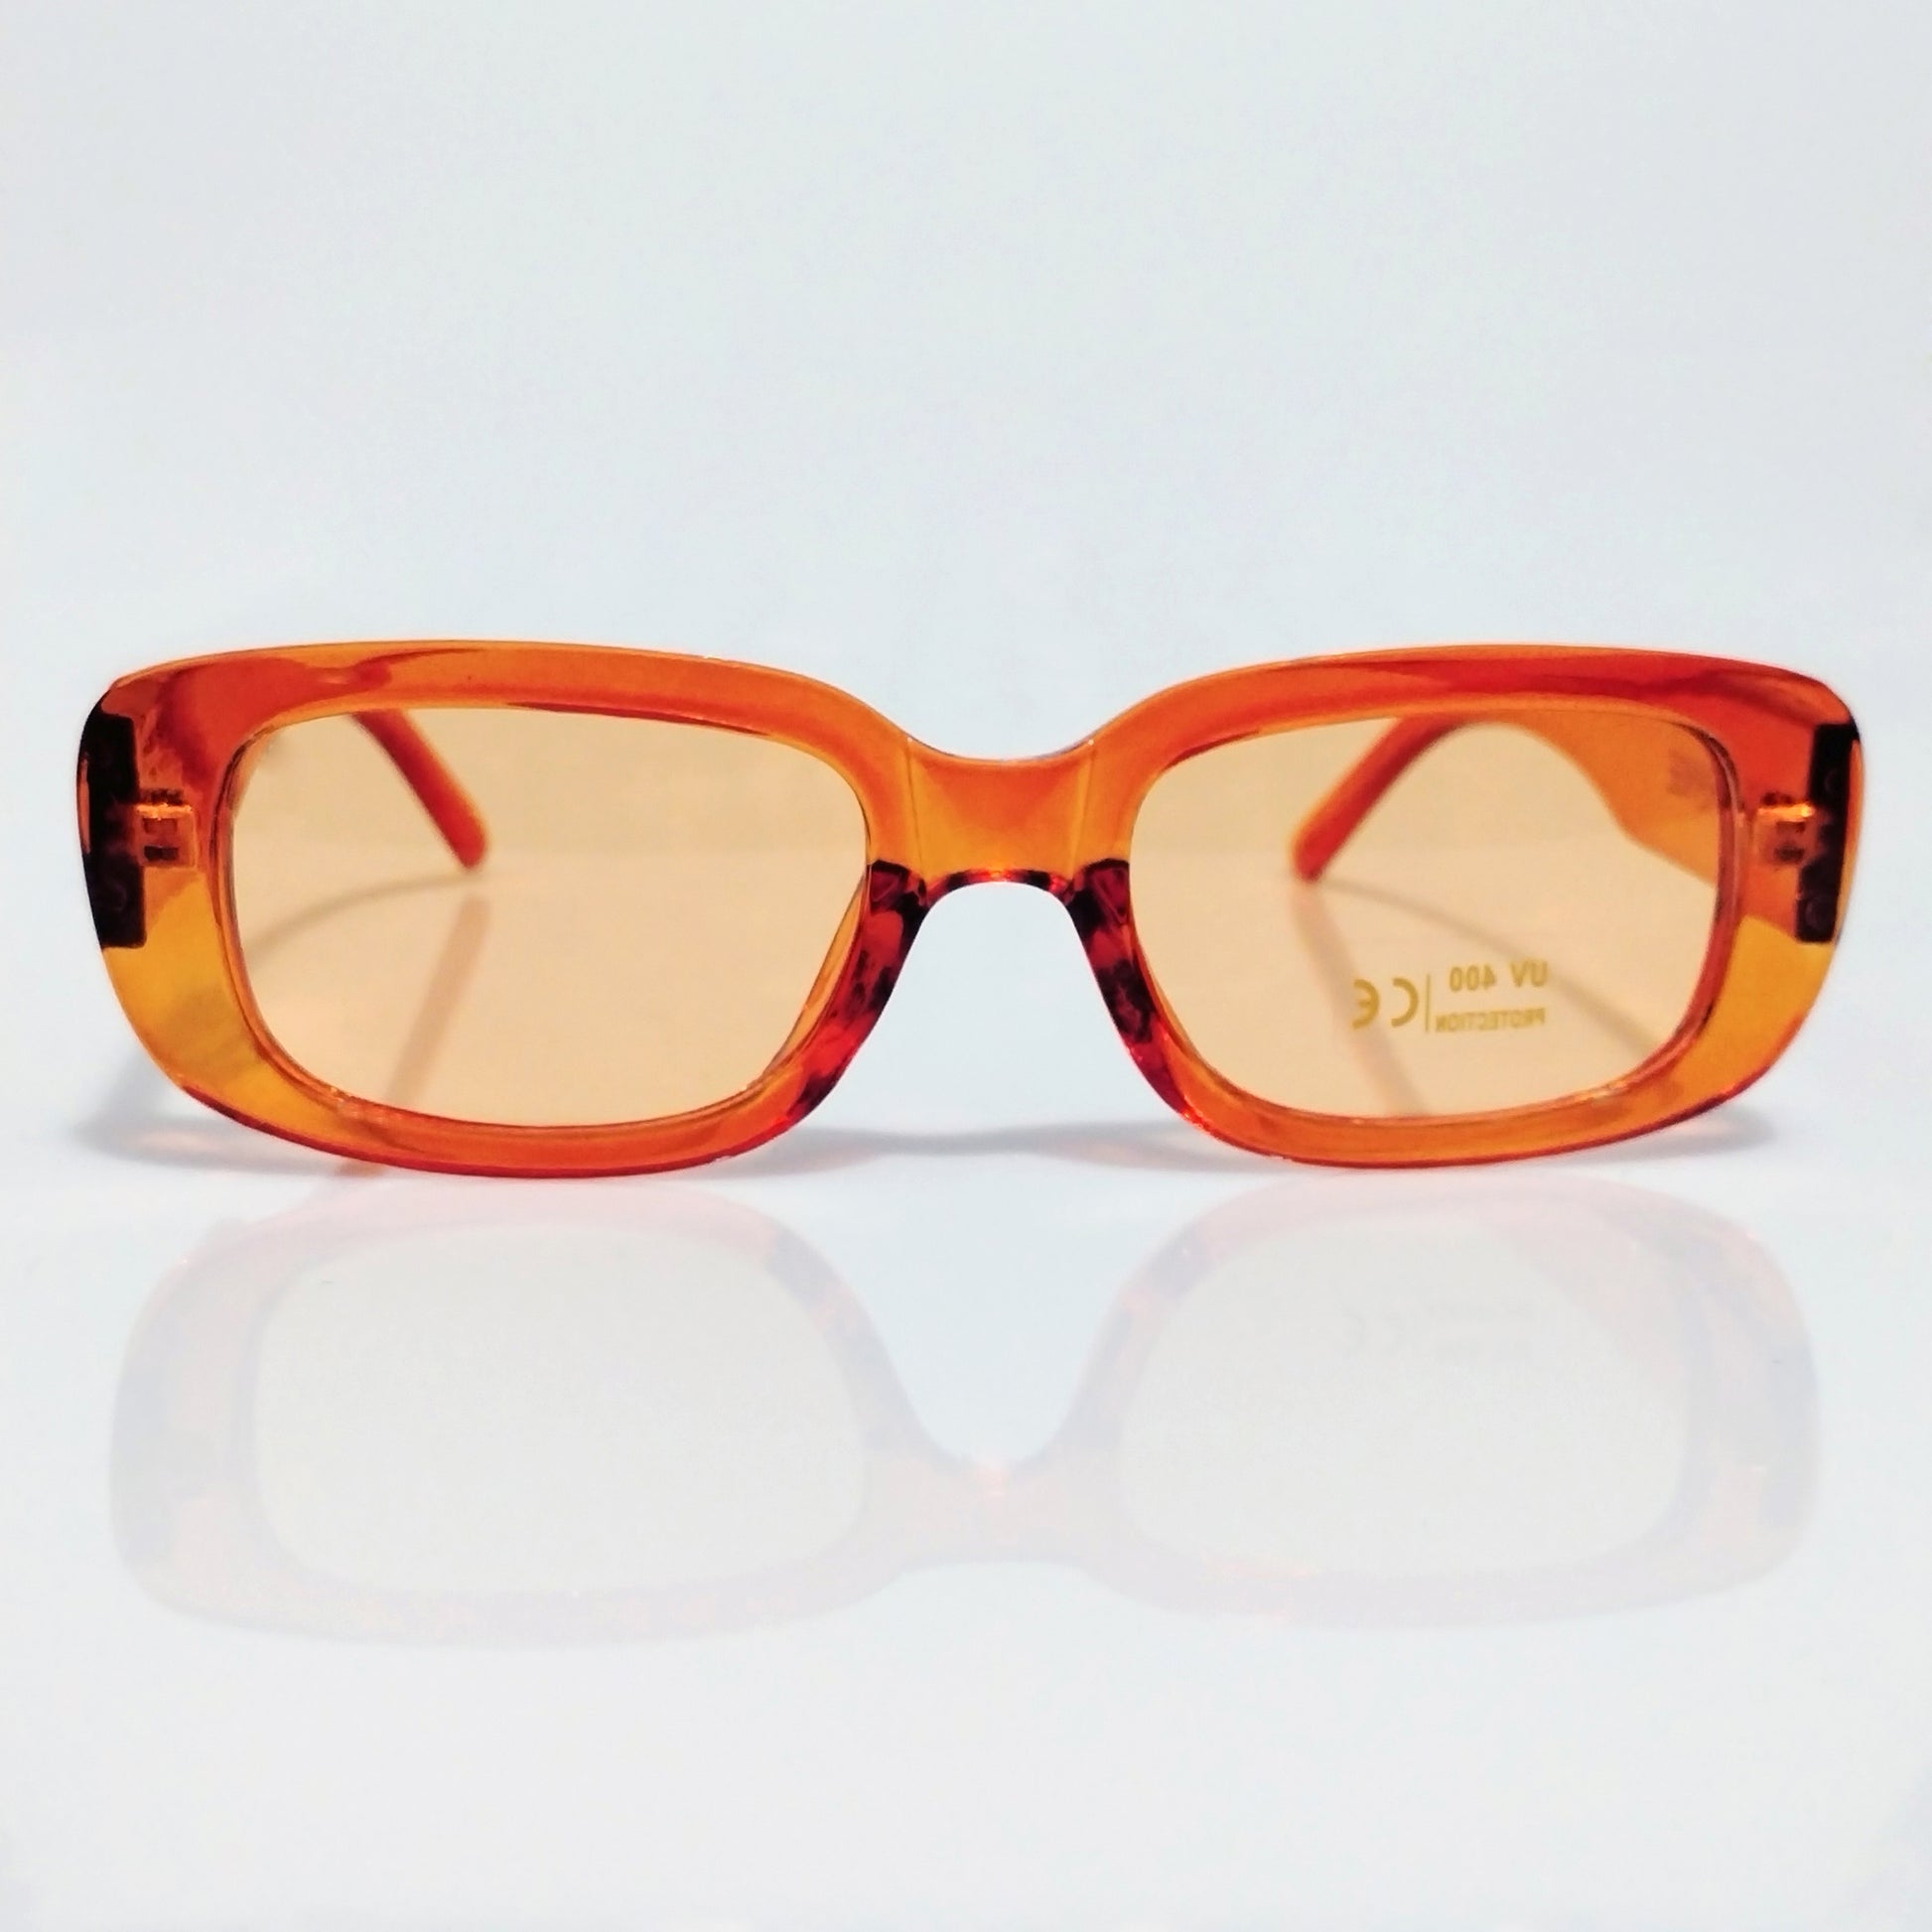 Glamourange Sunglasses Model GR-1010 C10